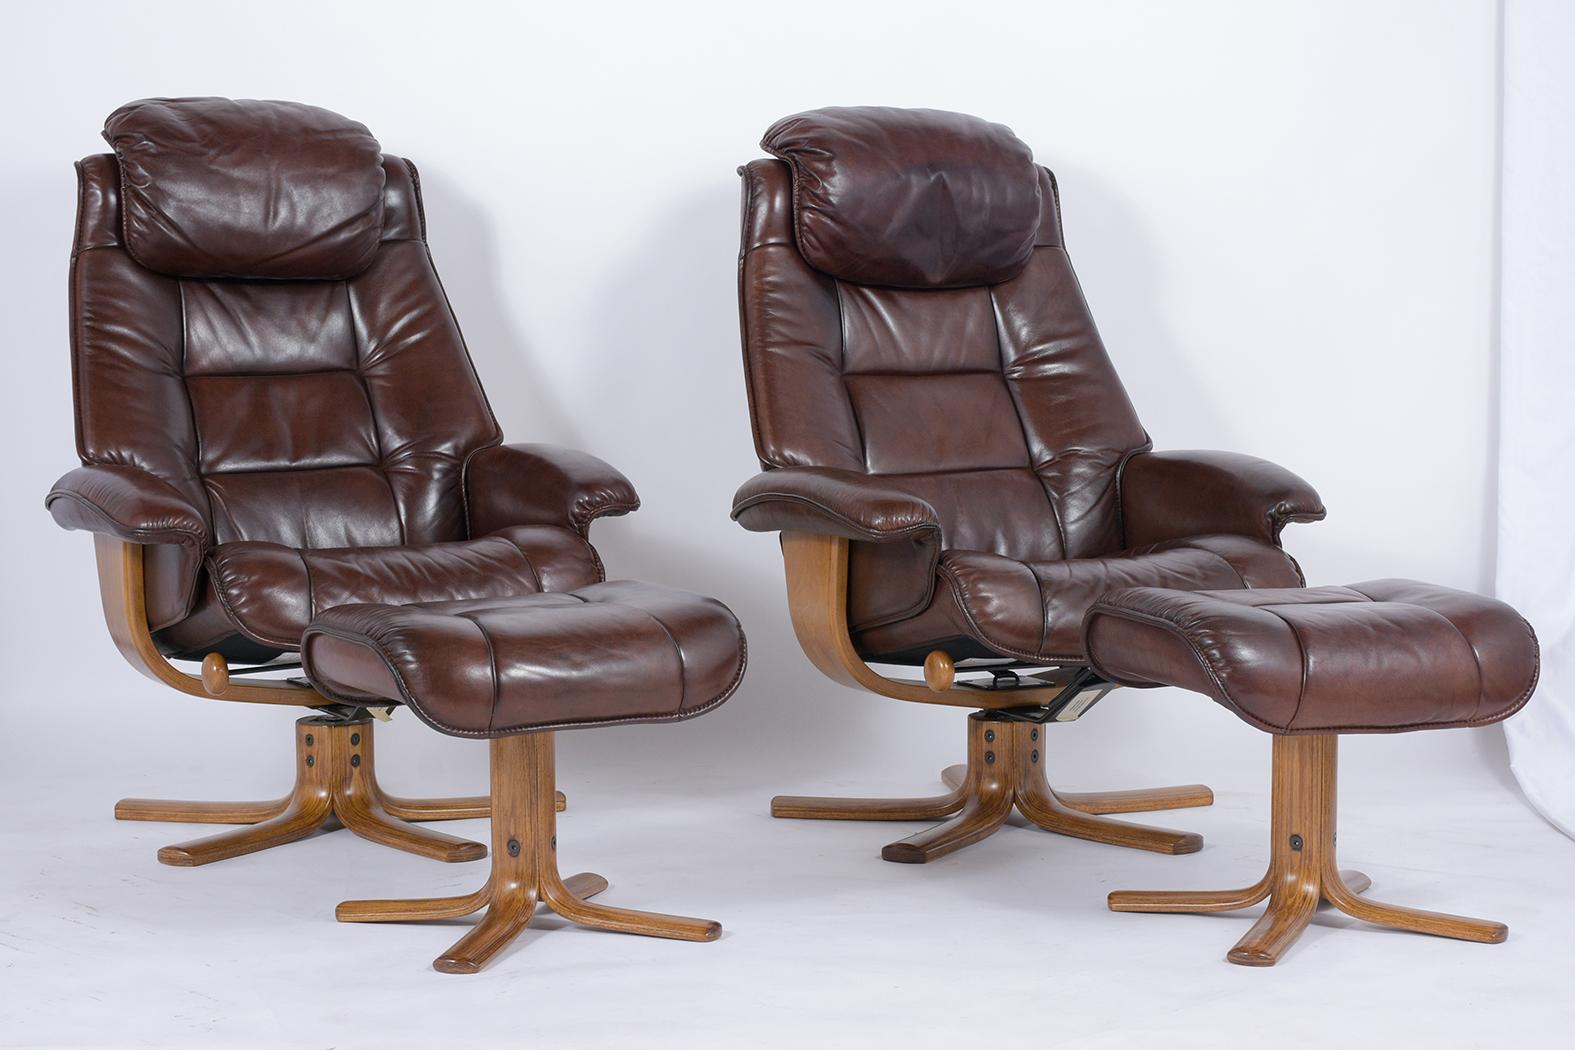 Plongez dans l'incarnation du design danois avec notre ensemble chaise longue et ottoman Vintage Mid-Century, restauré avec expertise pour une élégance moderne. Tapissé de cuir d'origine, aujourd'hui teinté dans un somptueux marron foncé, cet